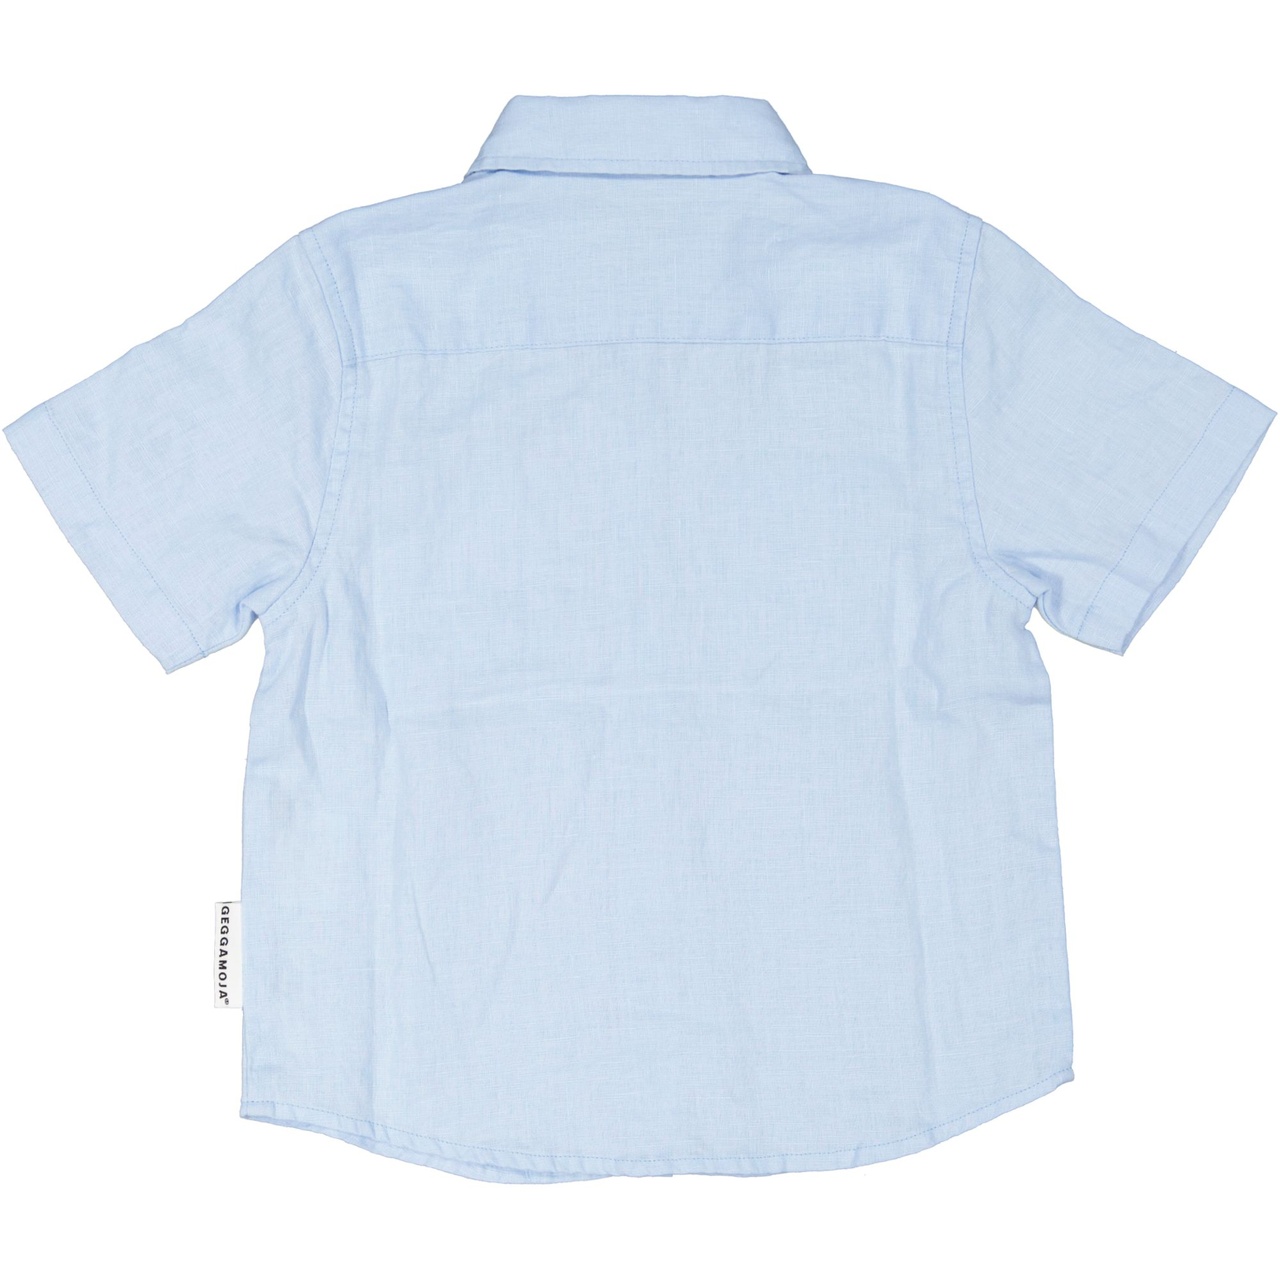 Linnen shirt teen L.blue 170